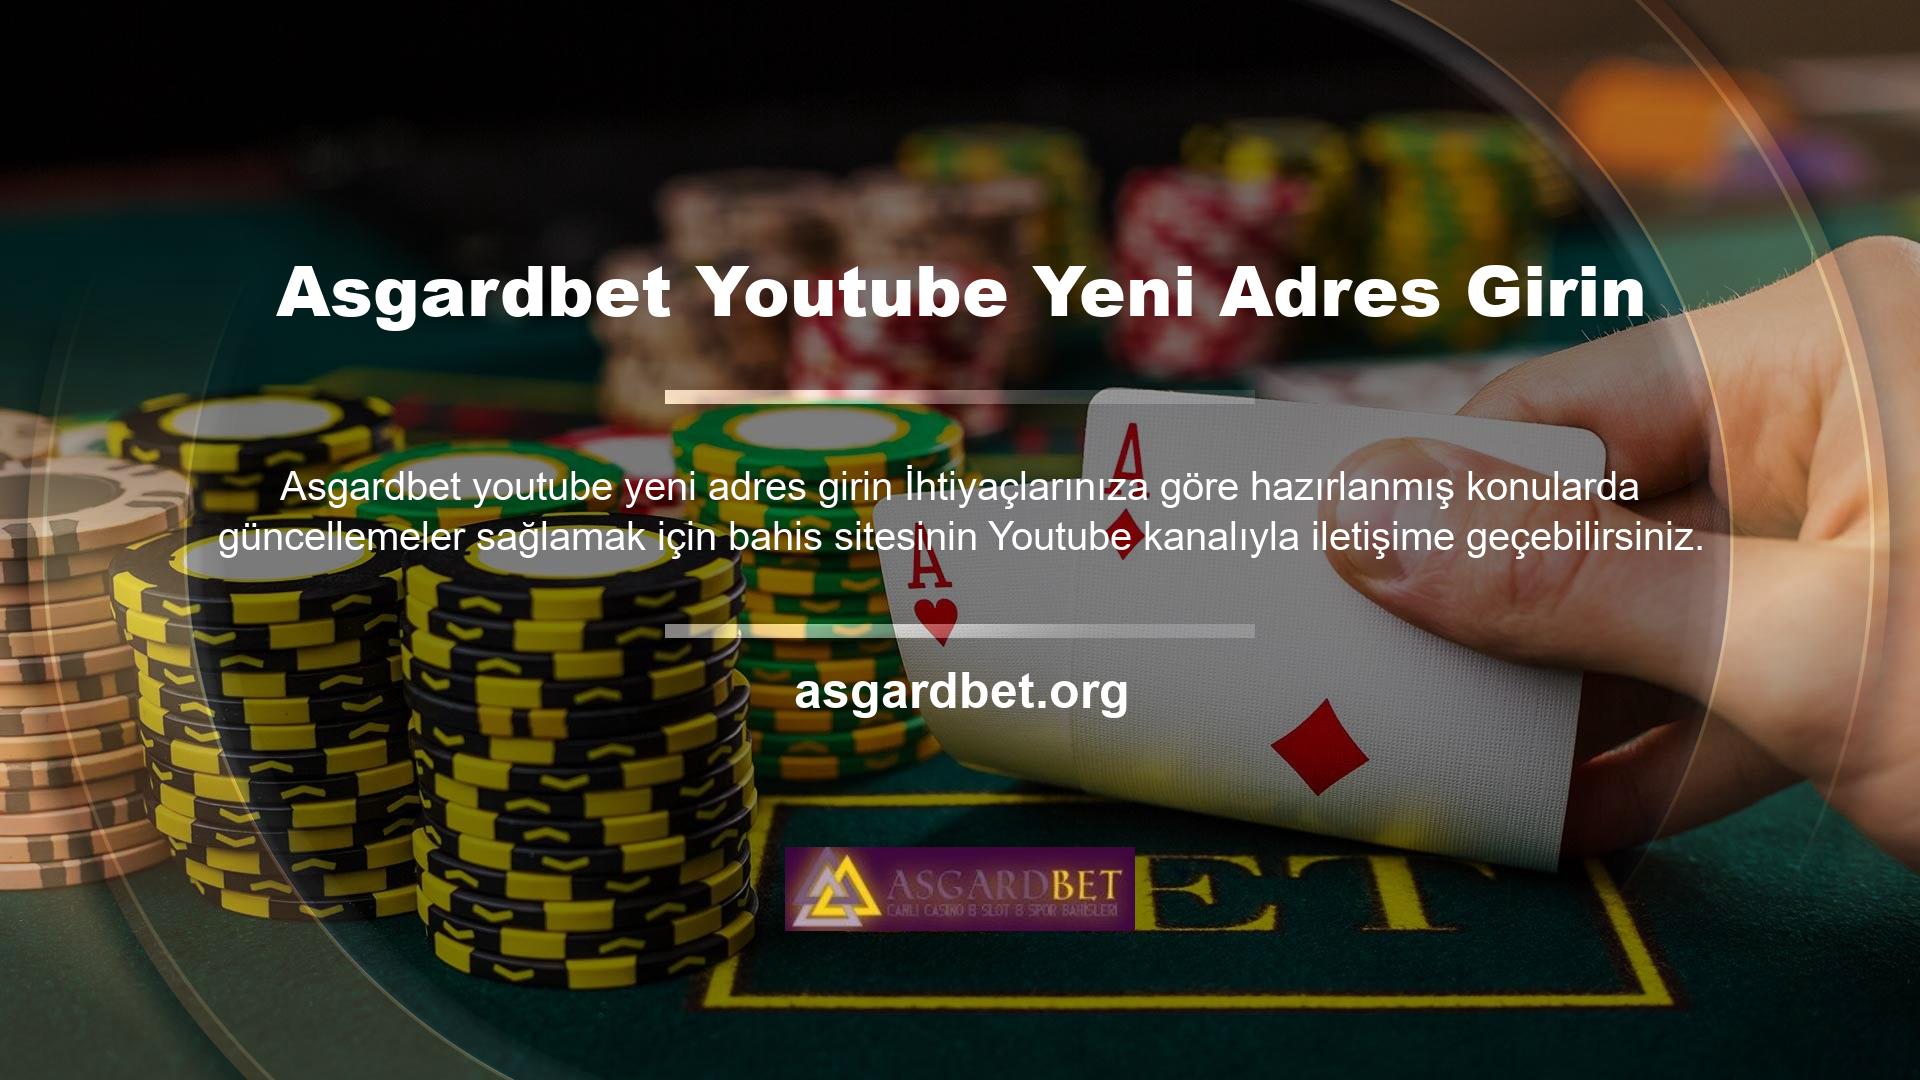 Bu nedenle Asgardbet Youtube kanalının büyük avantajlara sahip bir dijital medya kanalı olduğunu söyleyebiliriz